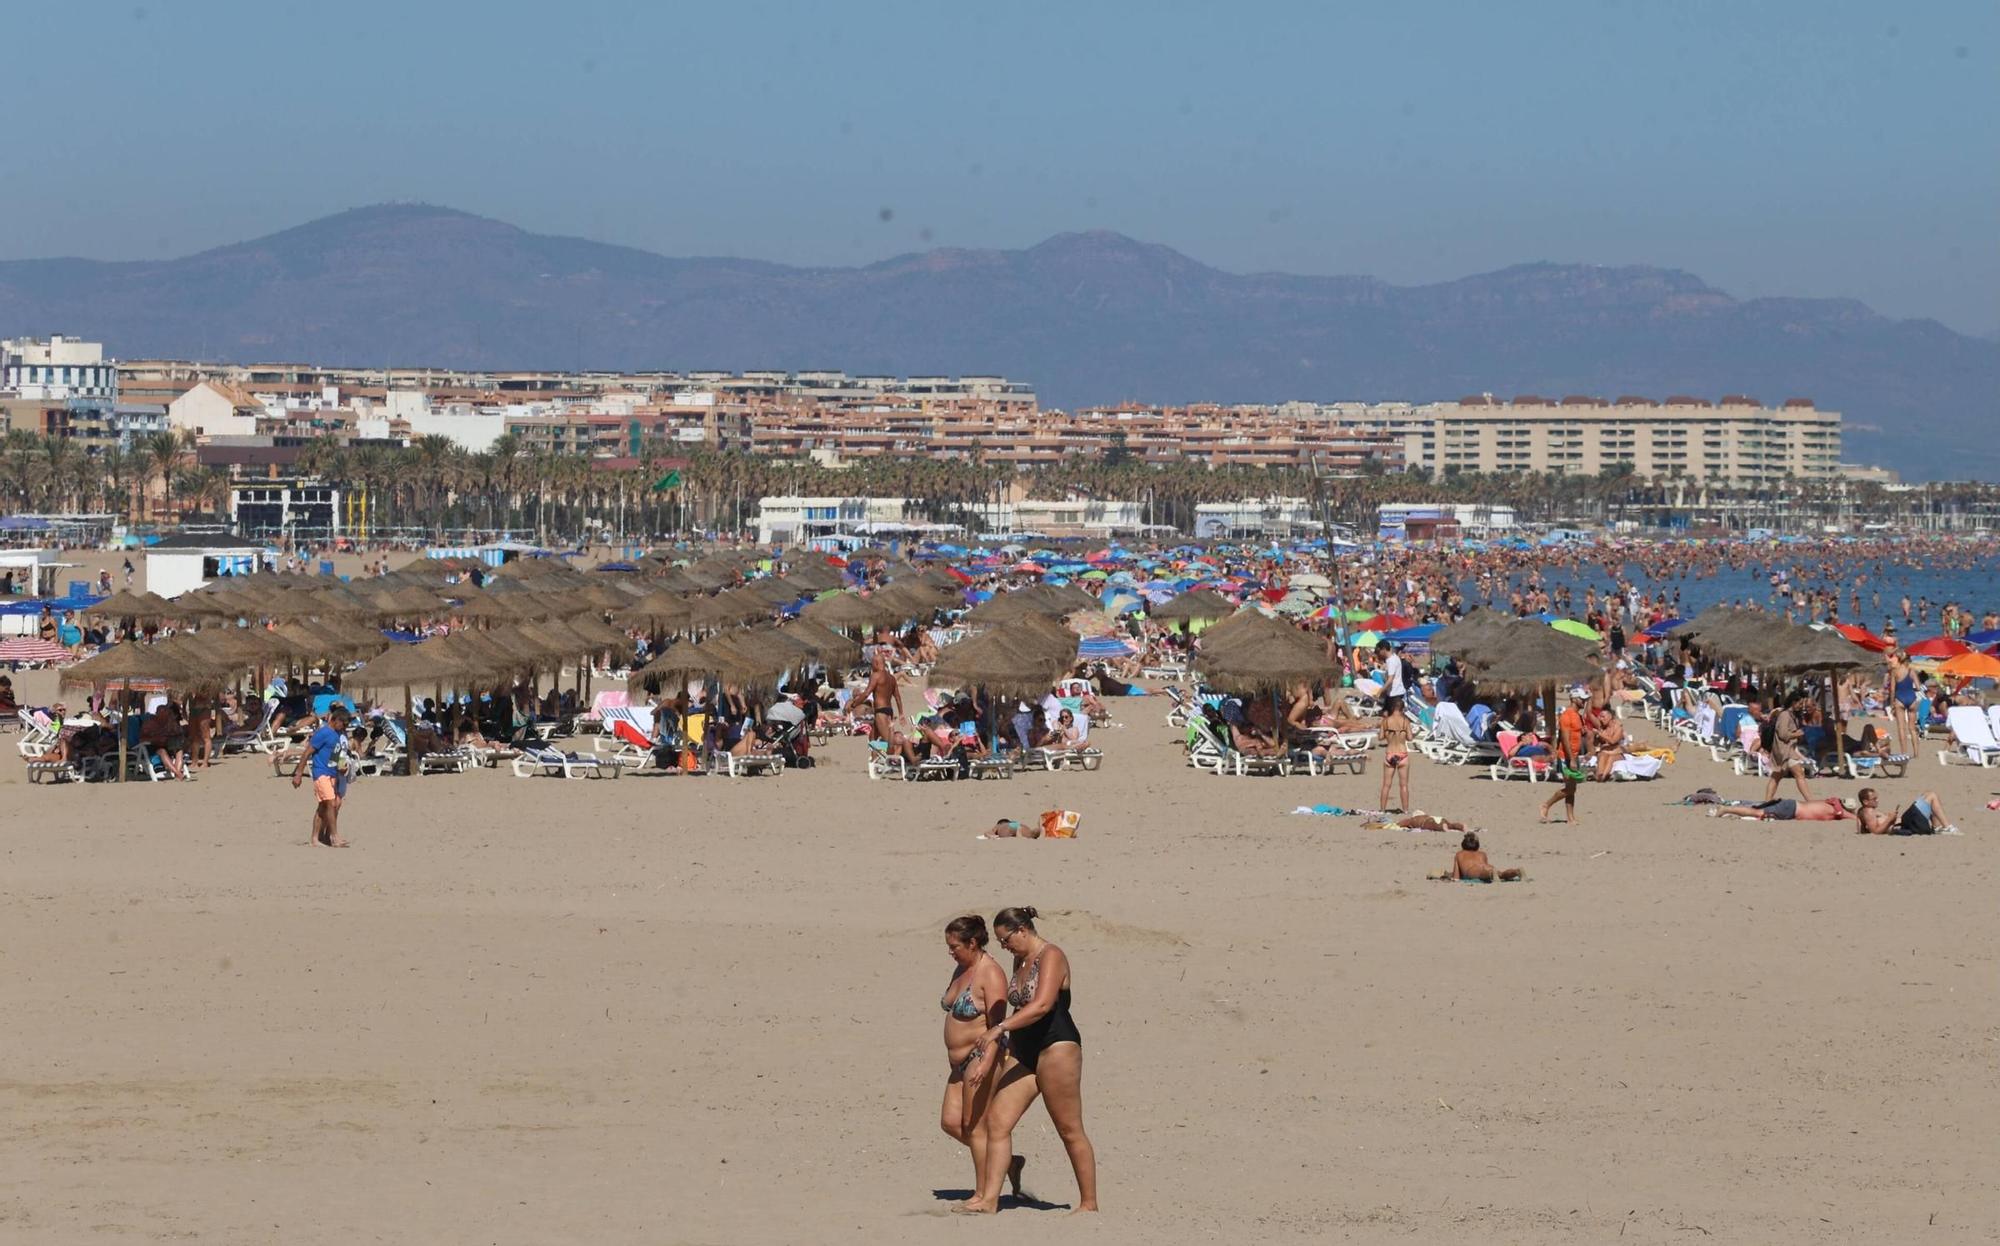 El buen tiempo llena la playa de la Malvarrosa en València